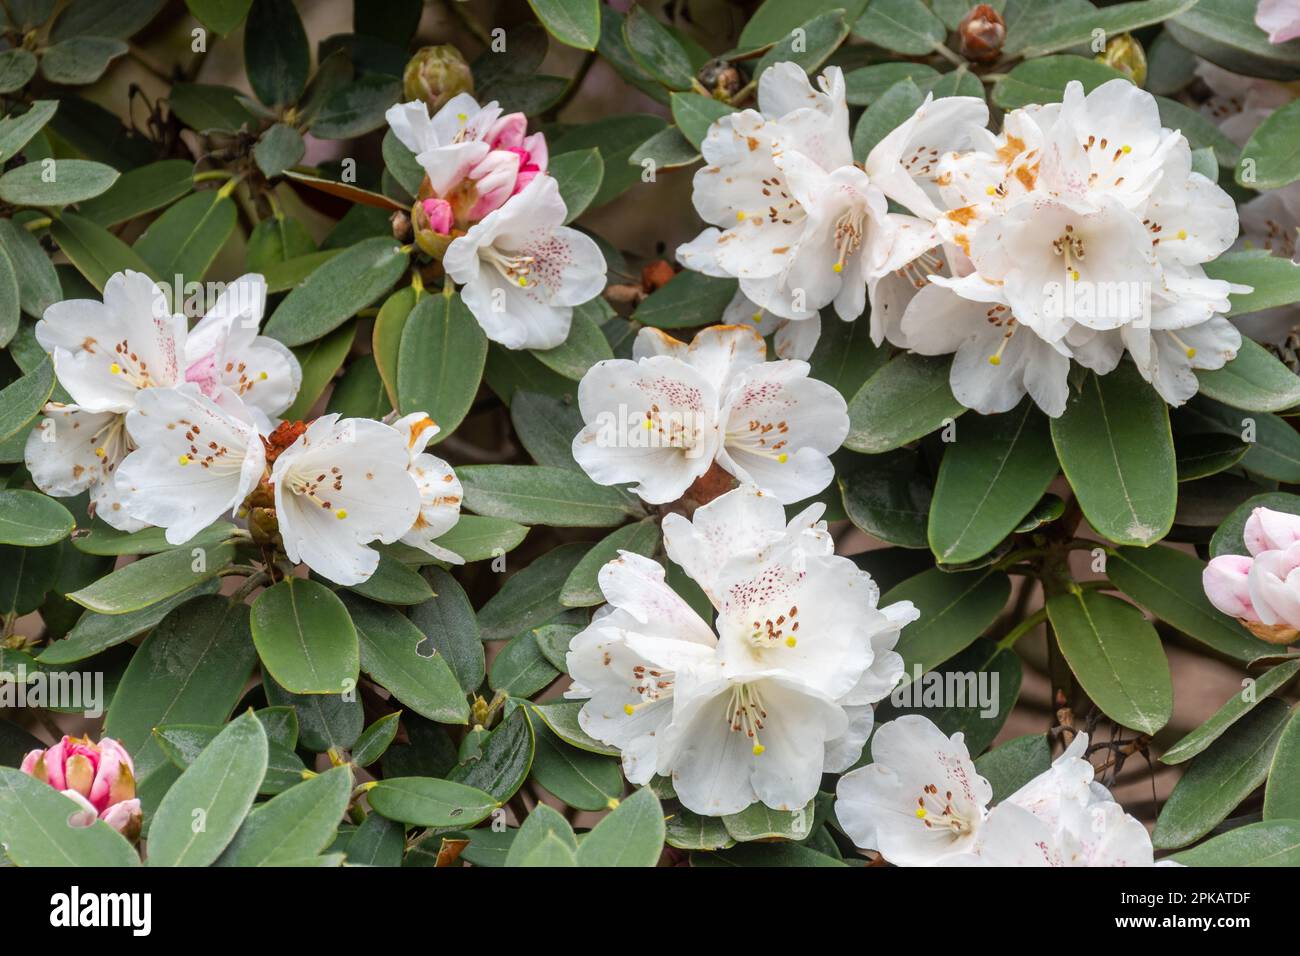 Pinkyweiße Blüten oder Blüten des immergrünen Strauchs Rhododendron pachysanthum im April oder Frühling, Großbritannien Stockfoto